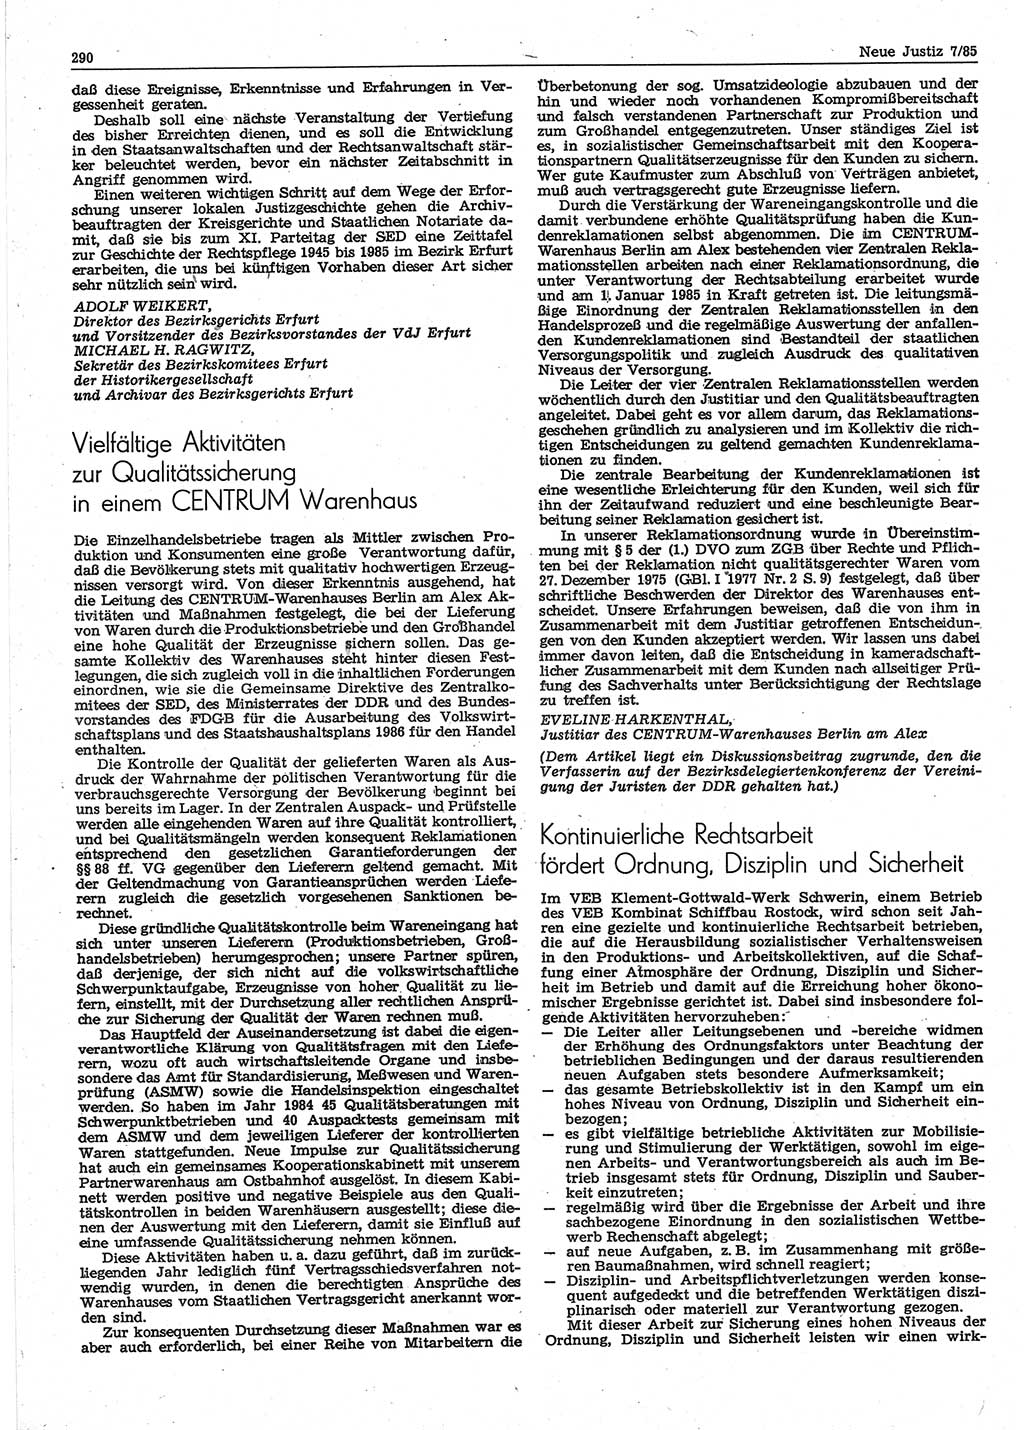 Neue Justiz (NJ), Zeitschrift für sozialistisches Recht und Gesetzlichkeit [Deutsche Demokratische Republik (DDR)], 39. Jahrgang 1985, Seite 290 (NJ DDR 1985, S. 290)